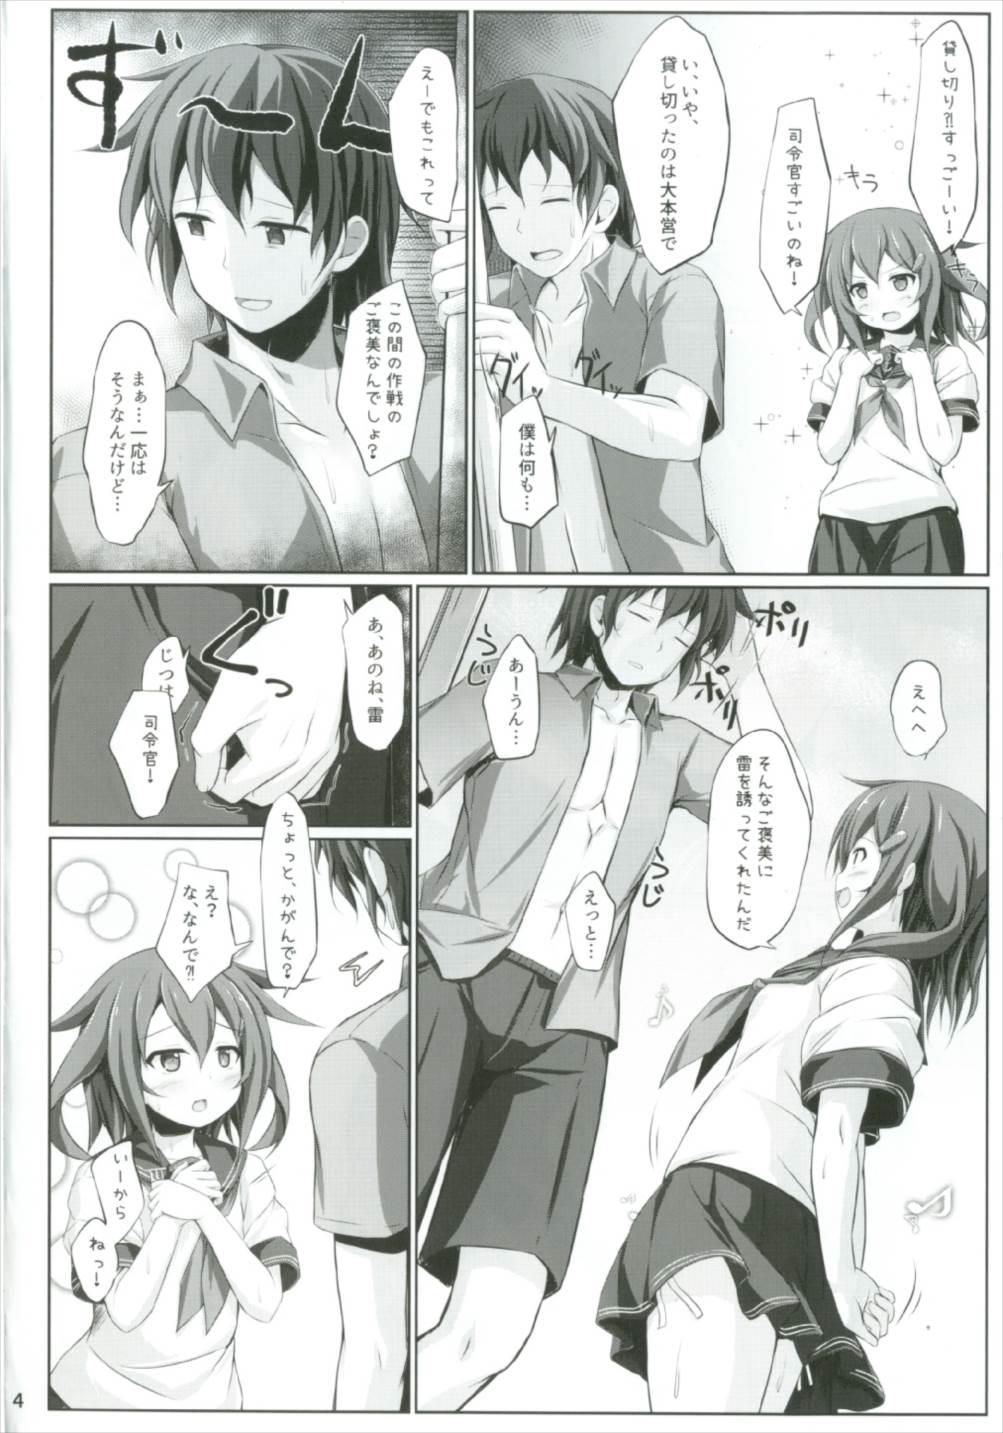 Throat Watashi ga Iru kara, Dame ja Nai wa! - Kantai collection Furry - Page 4